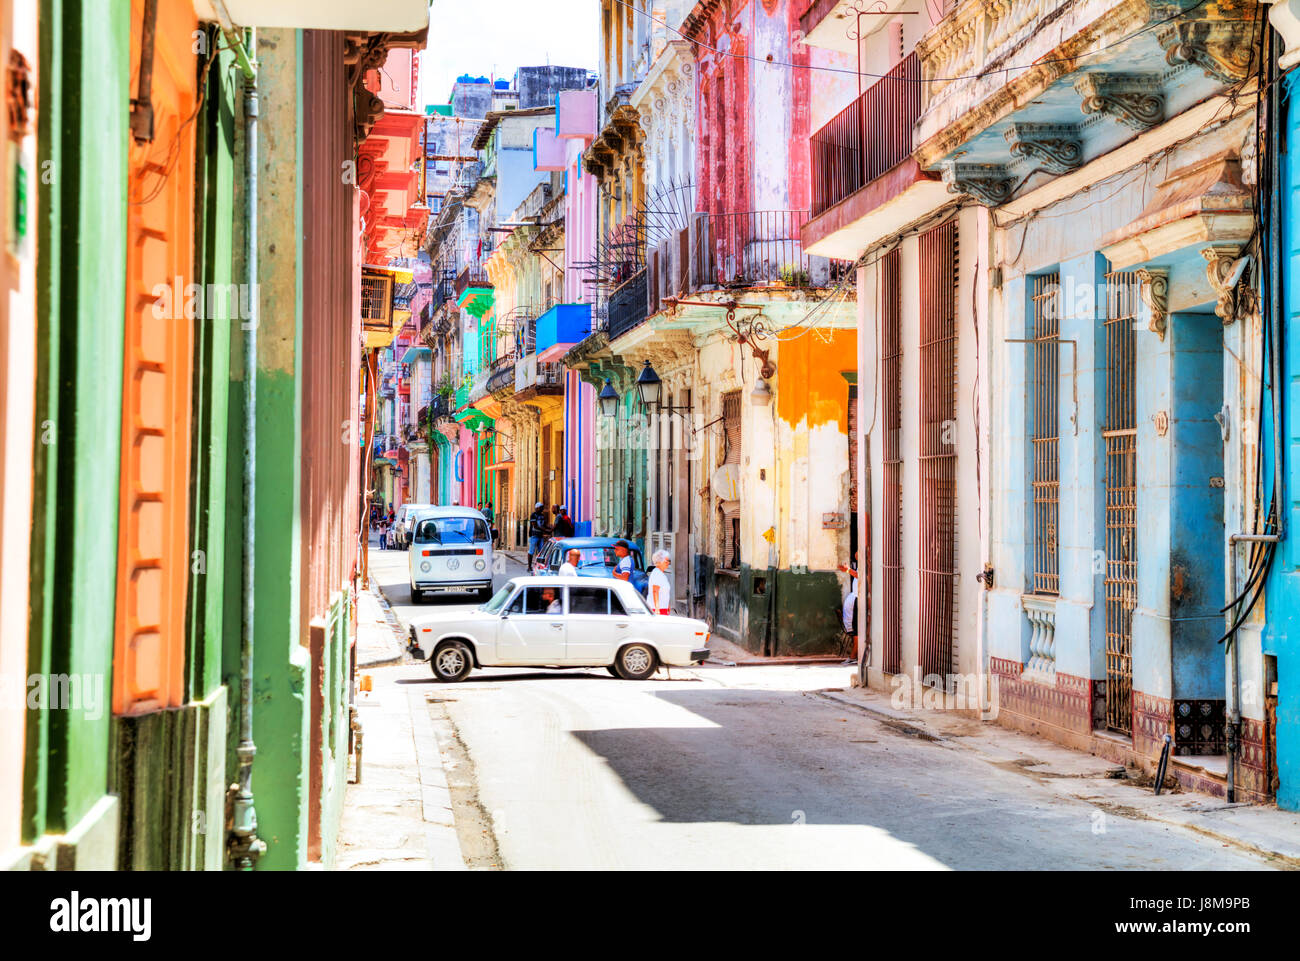 Farbenfrohe Gebäude auf Straße in Havanna Stadt, Kuba, kubanische Häuser, La Habana, Kuba, kubanische Havanna Häuser, Alt-Havanna, Habana Vieja Stockfoto